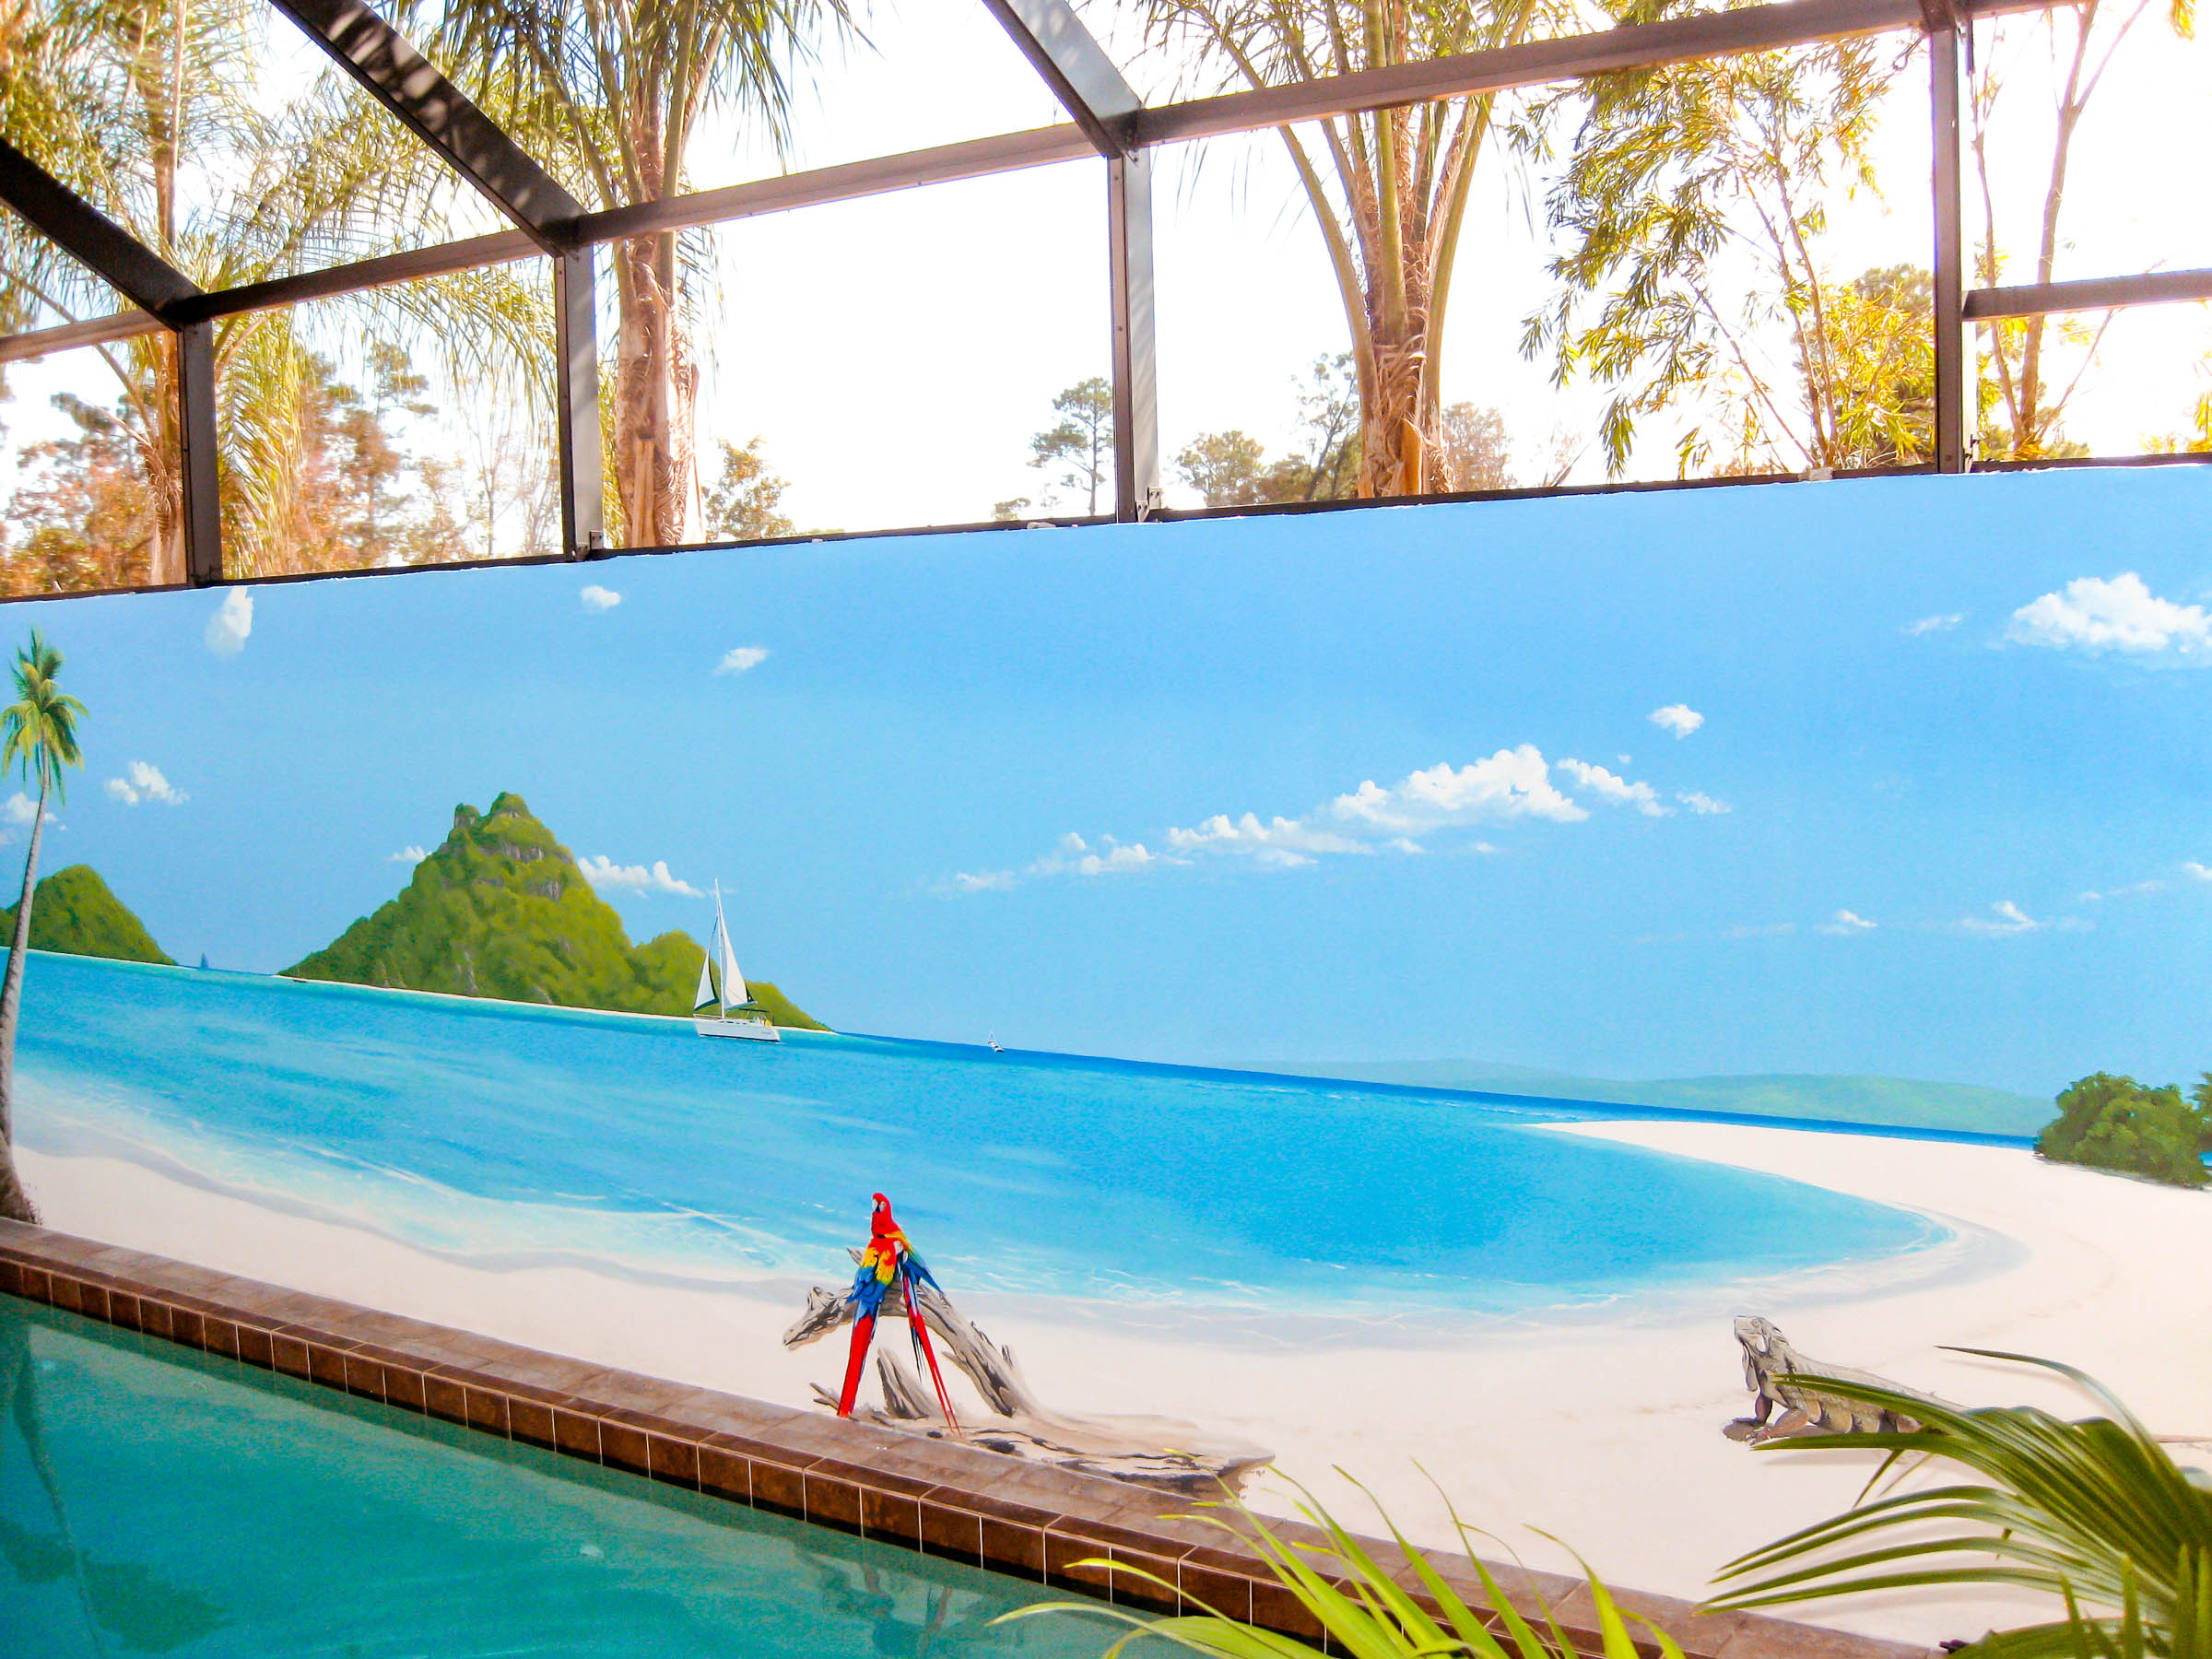 perfect-pool-mural-paradise-scene